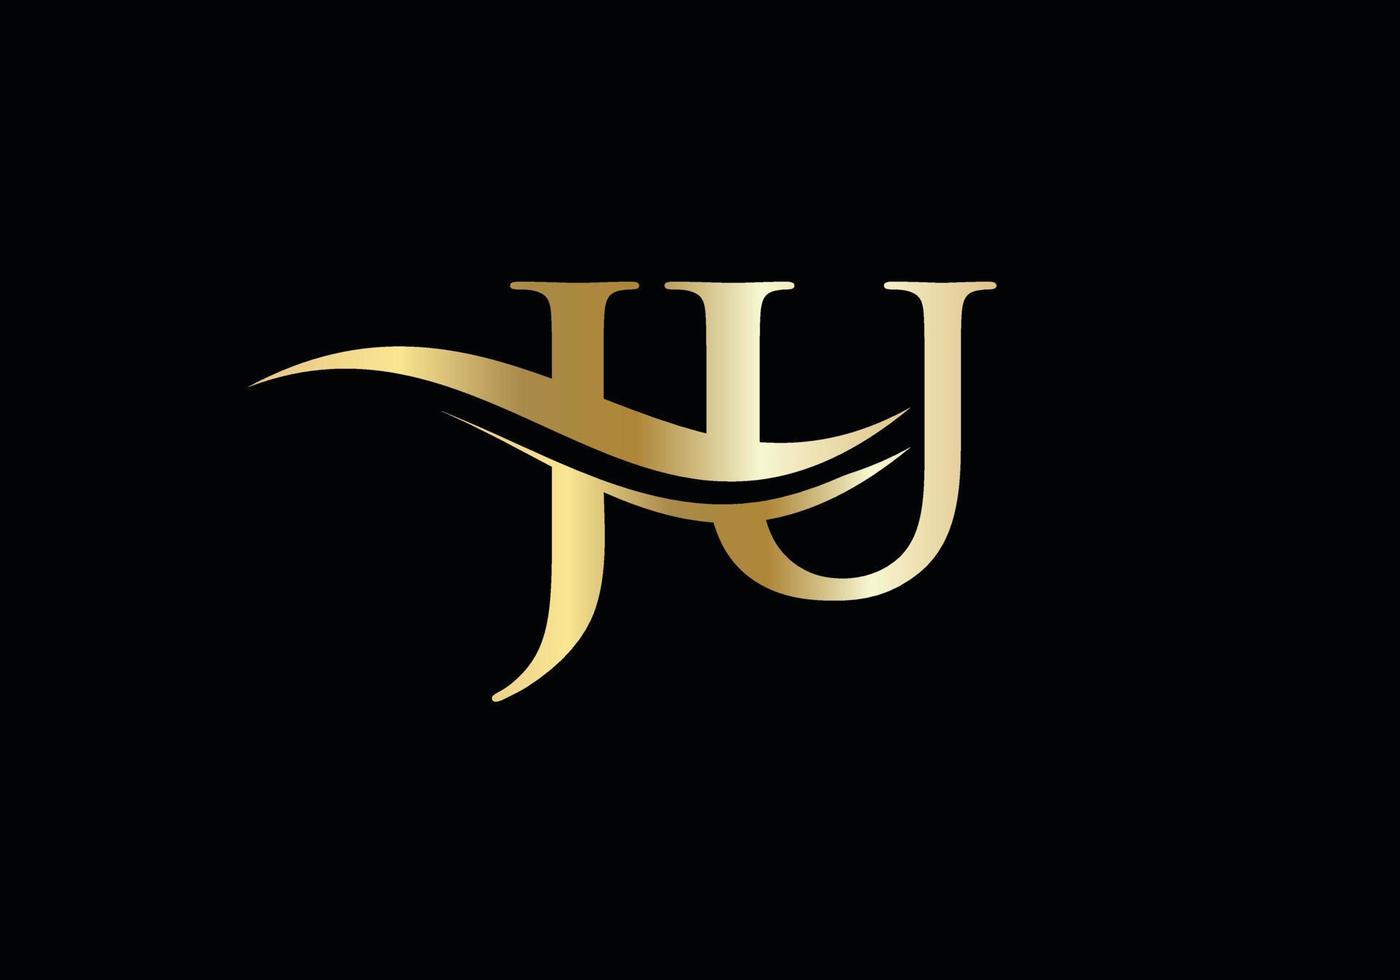 Modern JU logotype for luxury branding. Initial JU letter business logo design vector